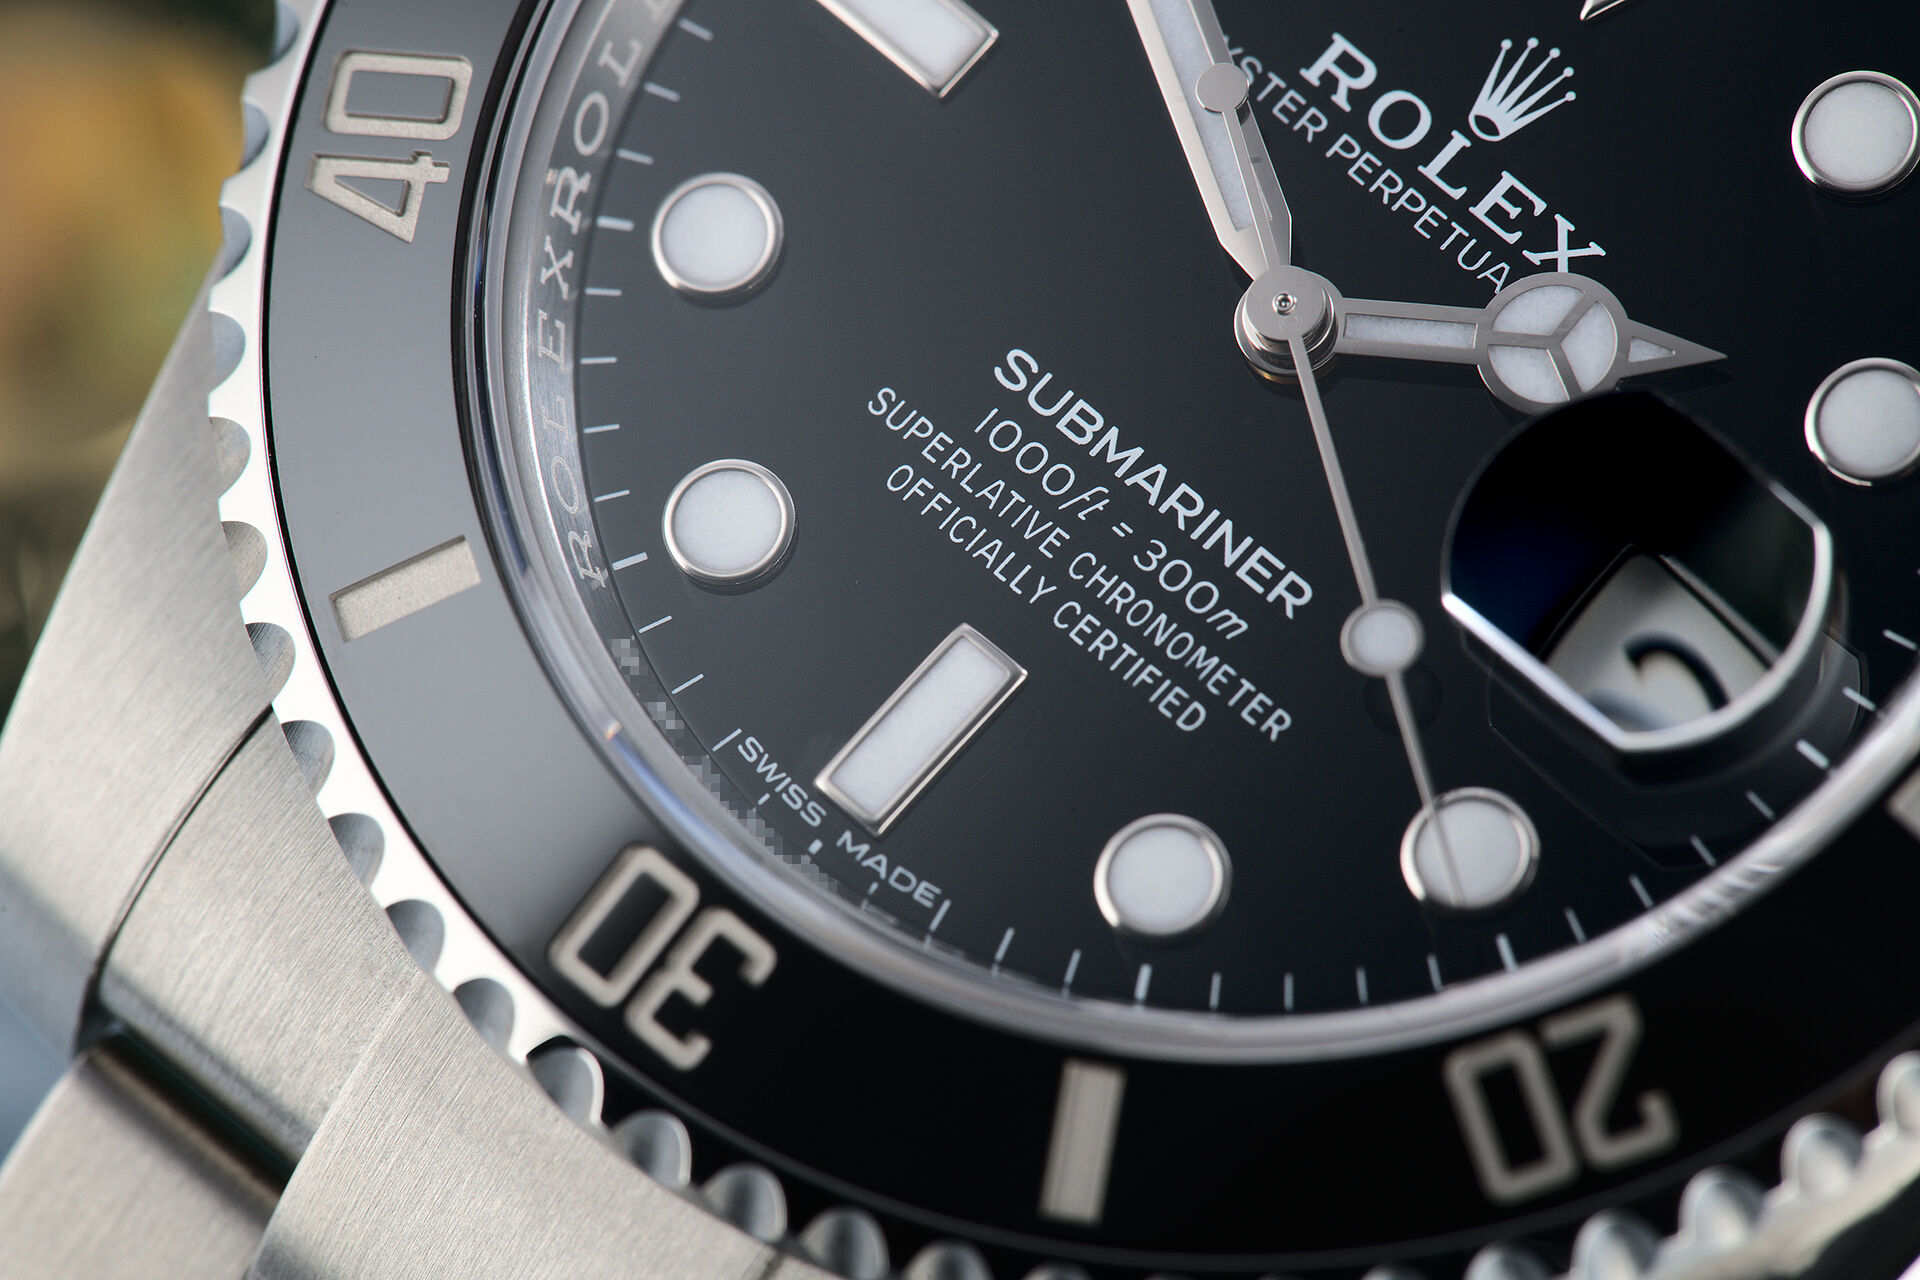 ref 116610LN | Brand New '5 Year Warranty' | Rolex Submariner Date